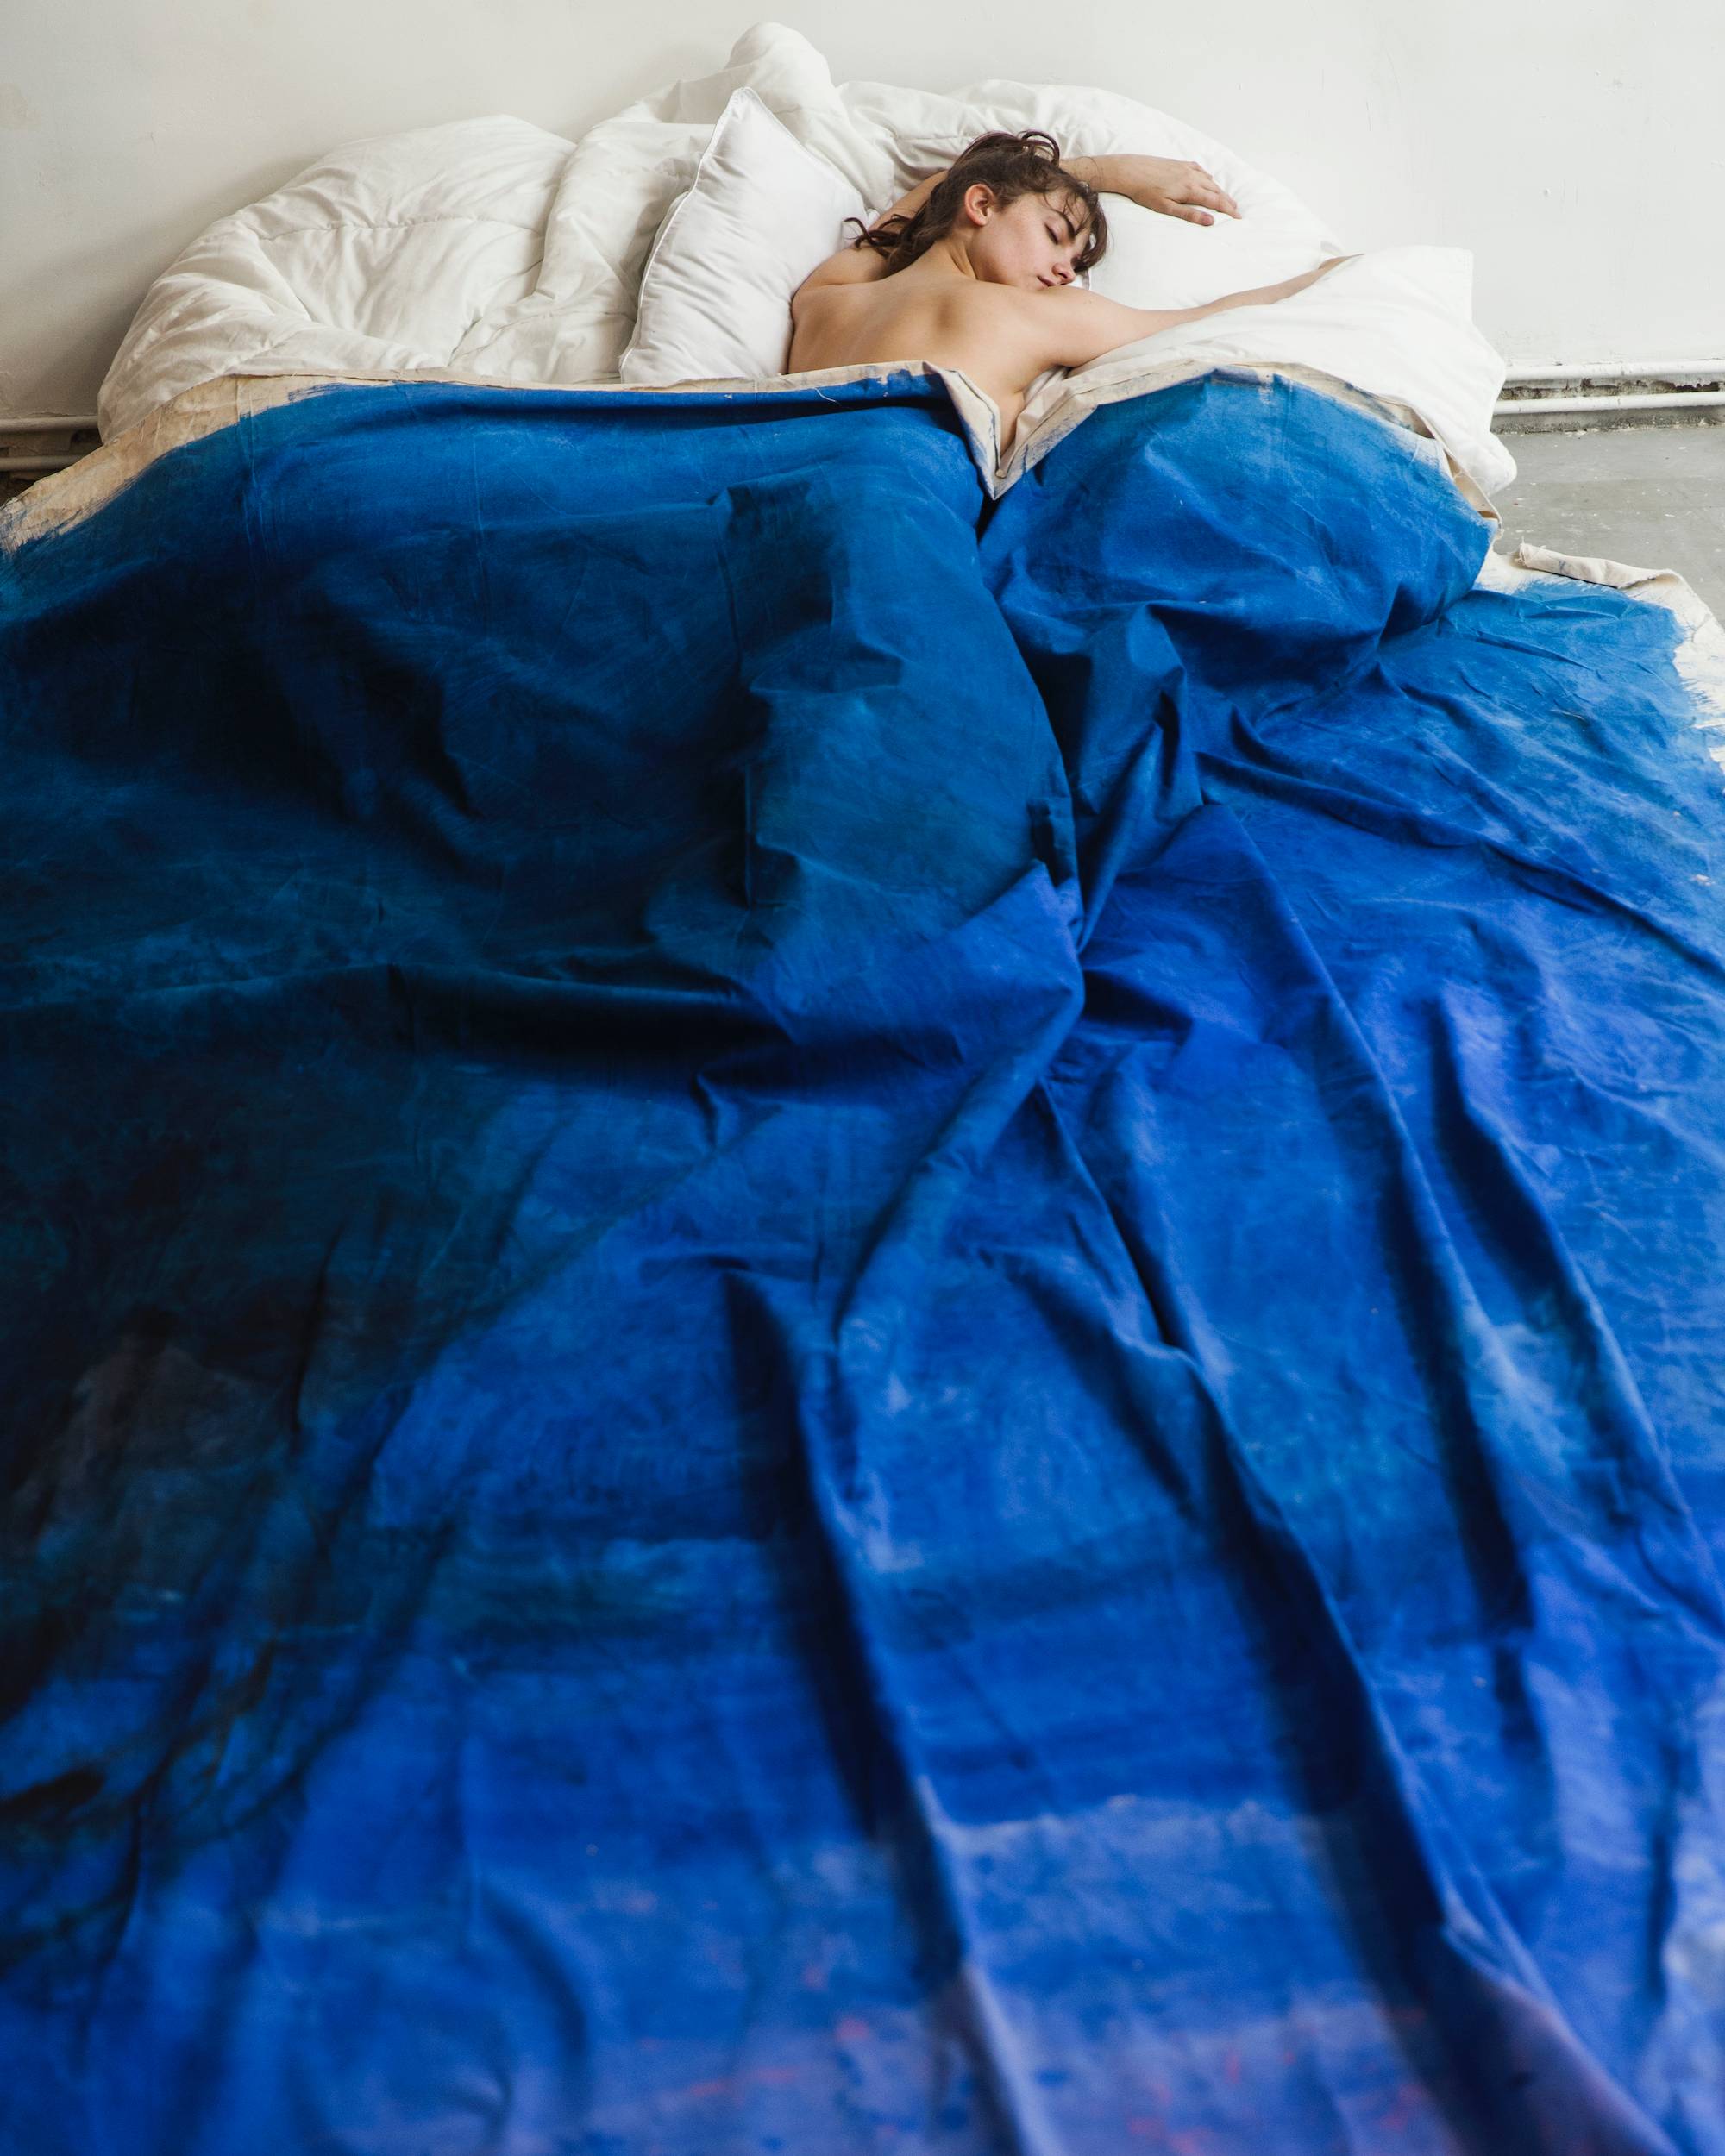 Charlotte Abramow, “Claire et le Lit Bleu”, Paris (2017). Courtesy Maison Guerlain / © Charlotte Abramow 